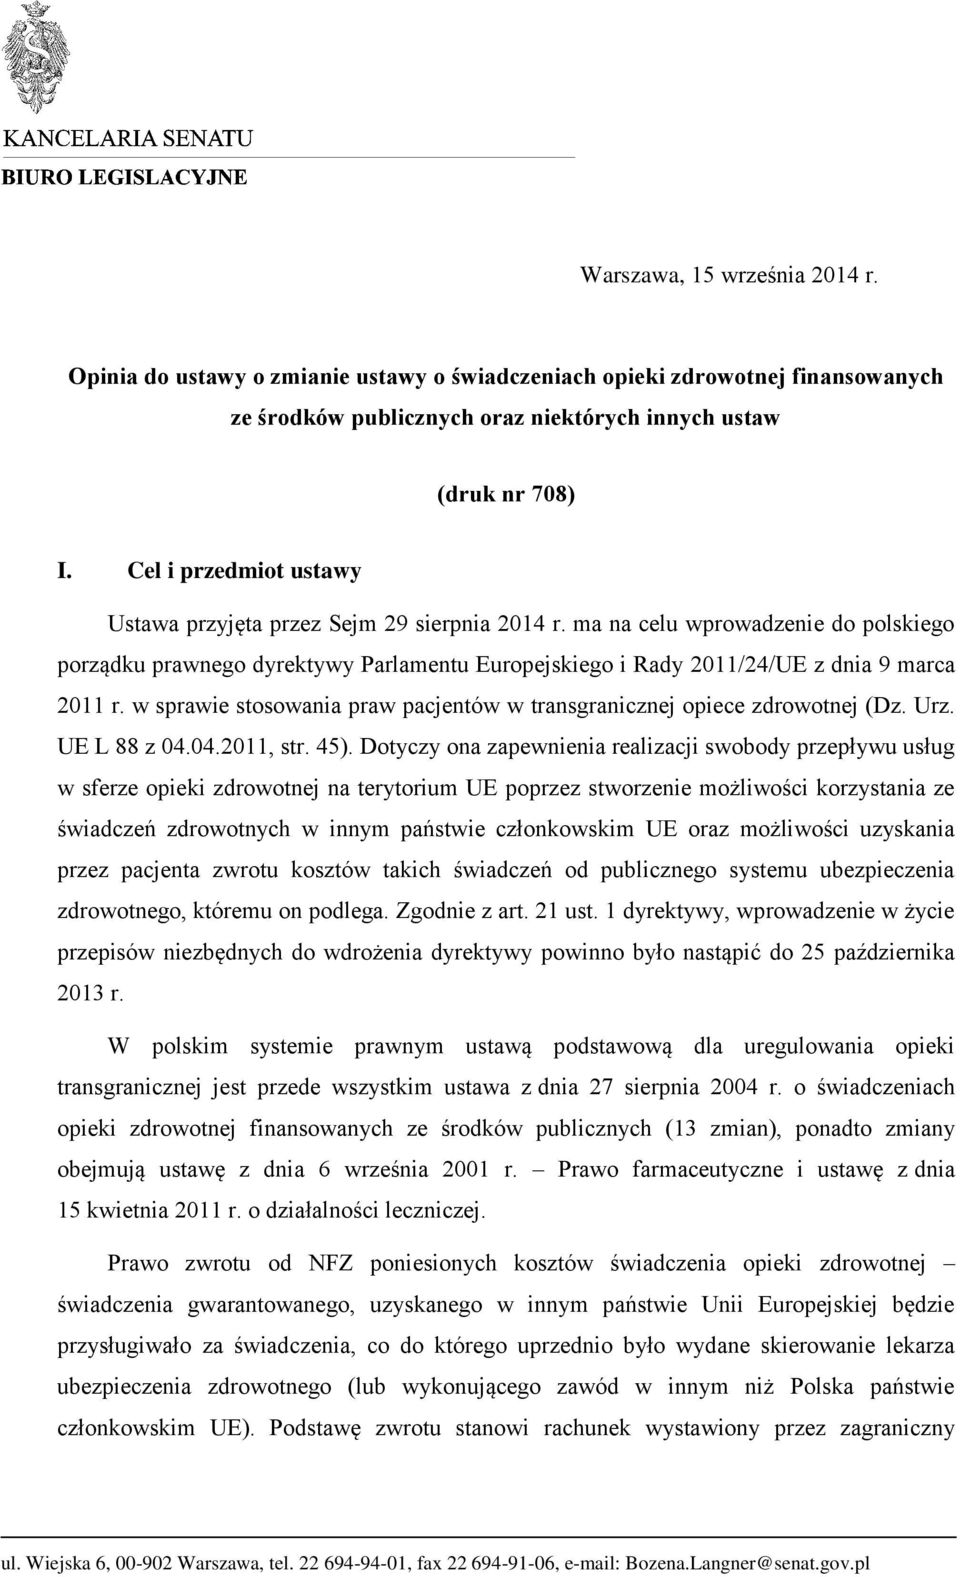 w sprawie stosowania praw pacjentów w transgranicznej opiece zdrowotnej (Dz. Urz. UE L 88 z 04.04.2011, str. 45).